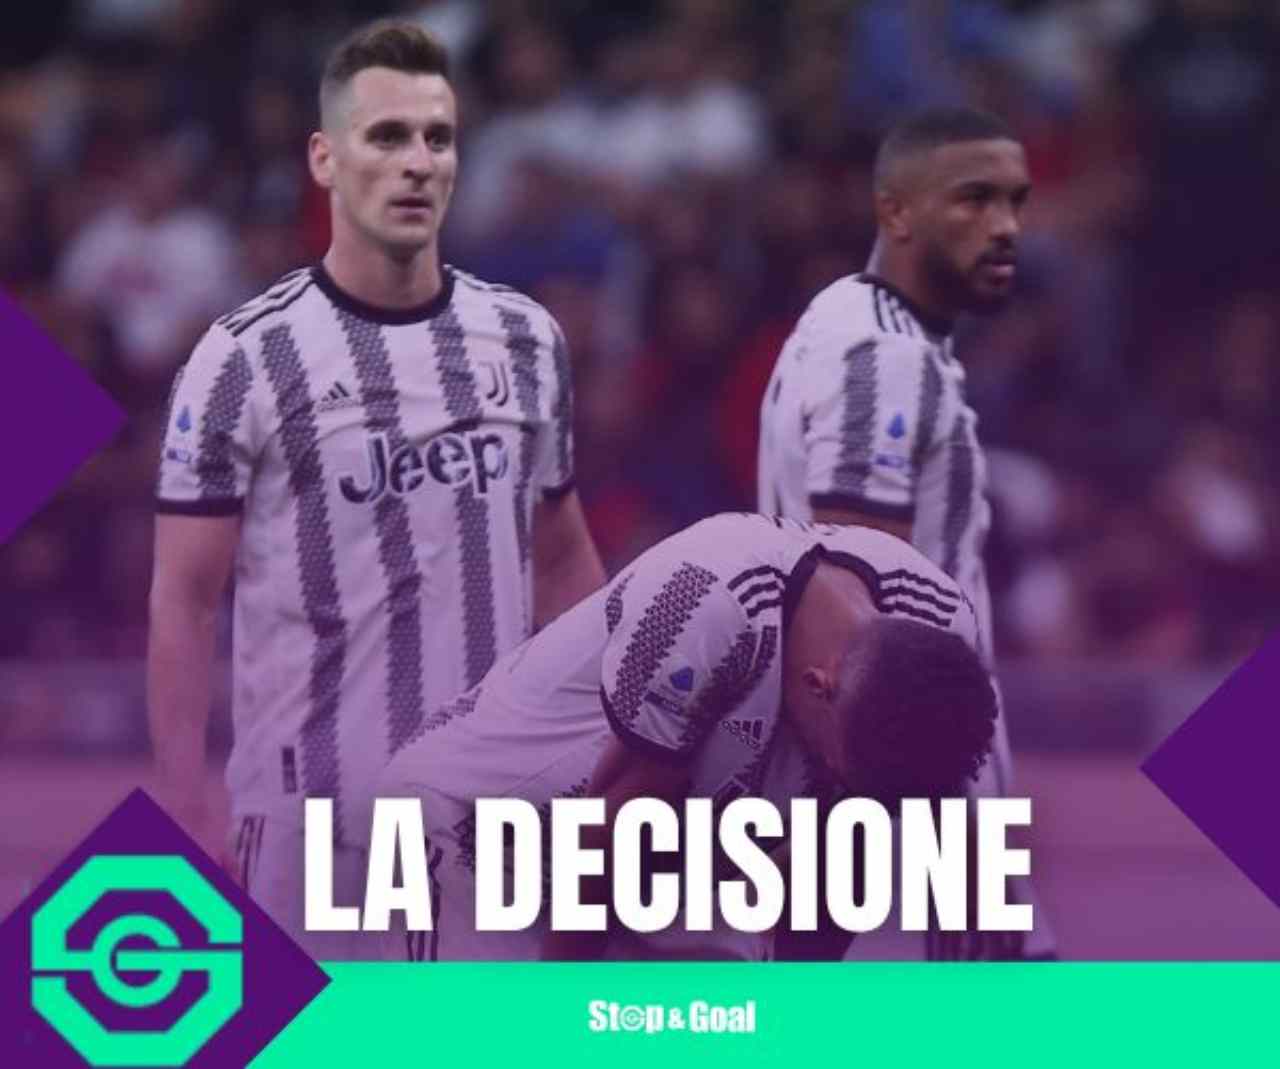 Juventus, la decisione dei giocatori - stopandgoal.com (La Presse)